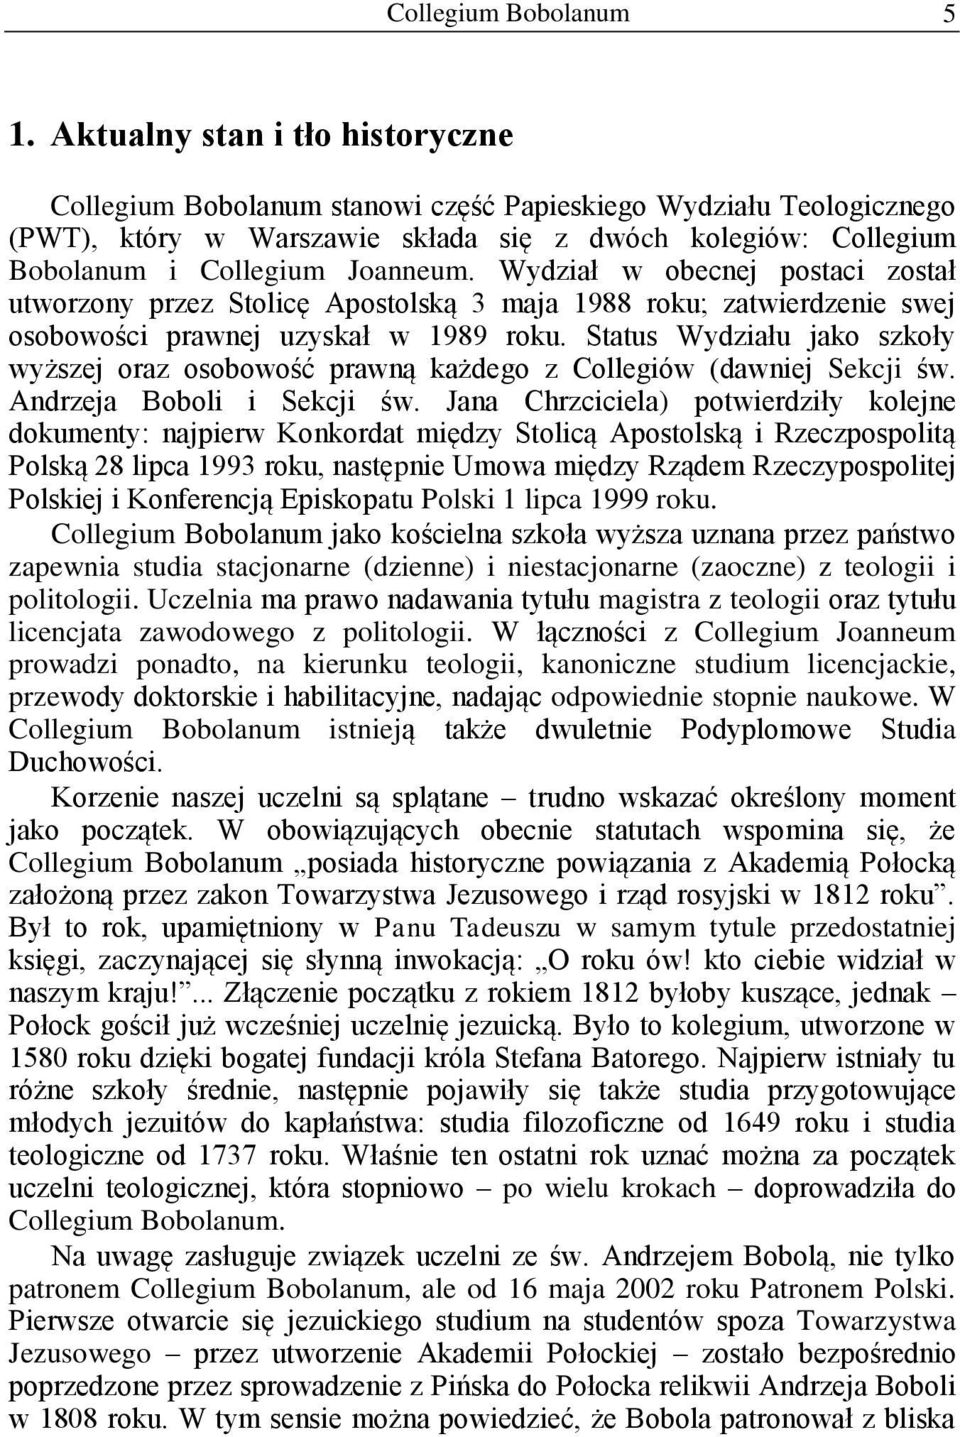 Status Wydziału jako szkoły wyższej oraz osobowość prawną każdego z Collegiów (dawniej Sekcji św. Andrzeja Boboli i Sekcji św.